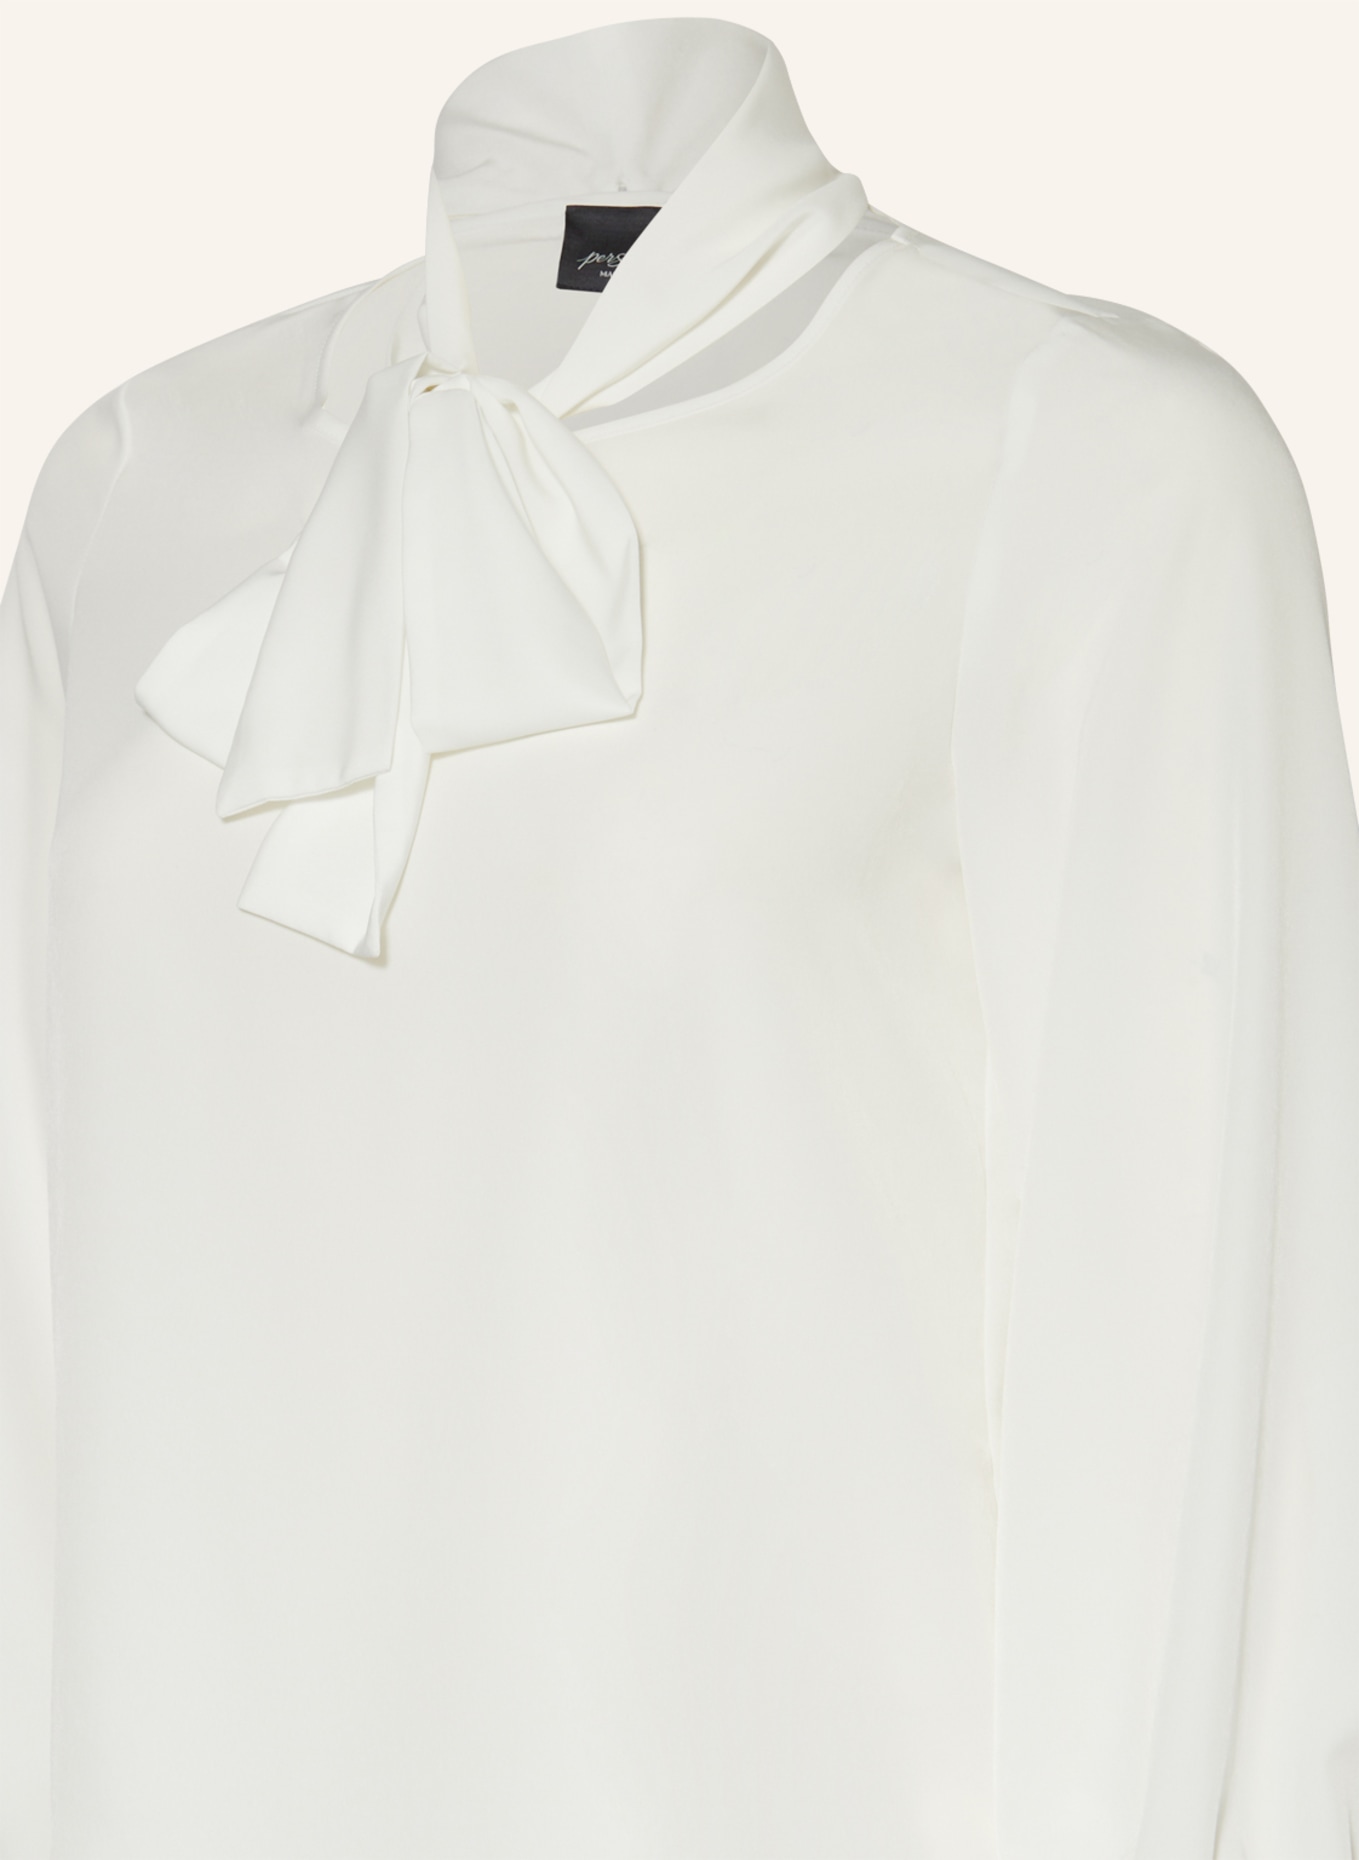 MARINA RINALDI PERSONA Shirt blouse BREZZA, Color: WHITE (Image 3)